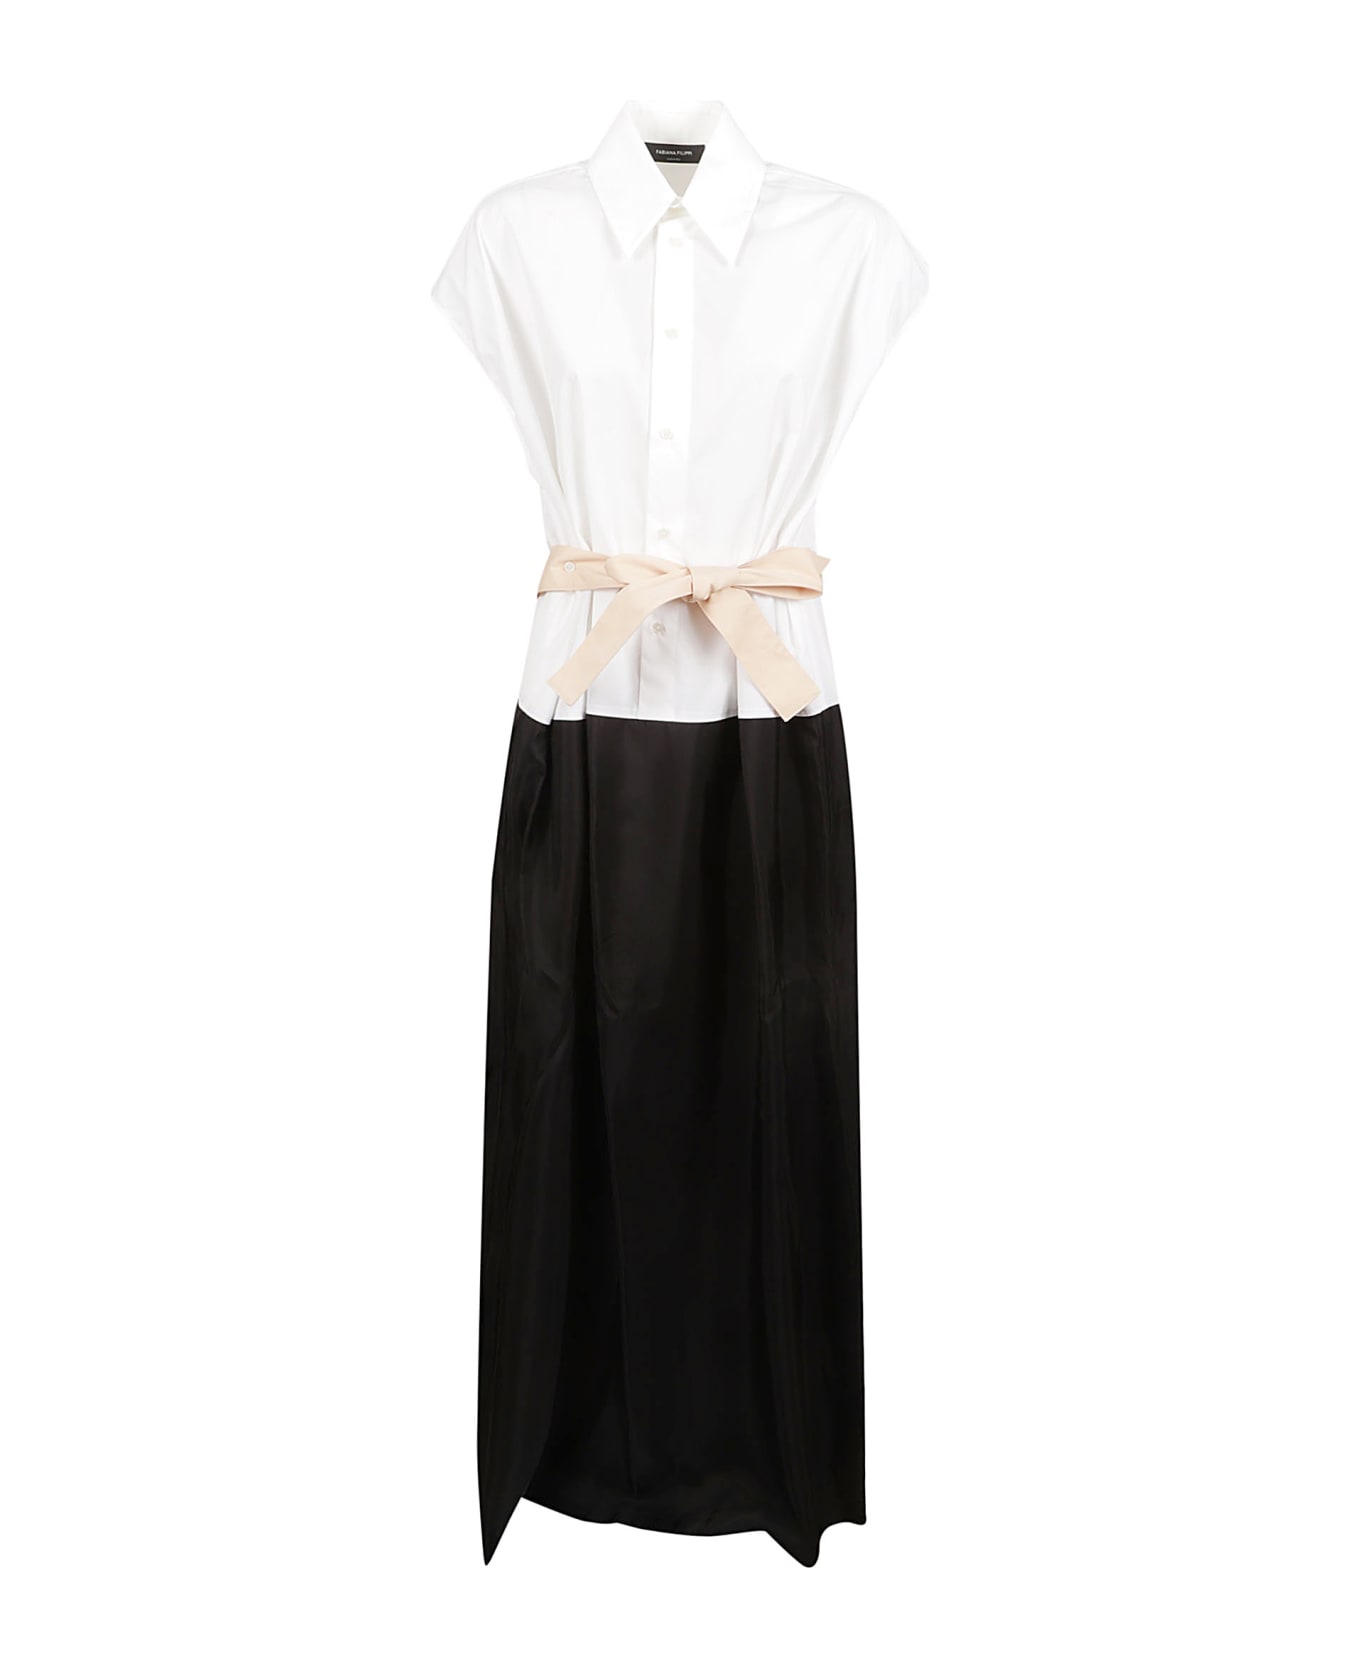 Fabiana Filippi Shirt Dress - White/Black